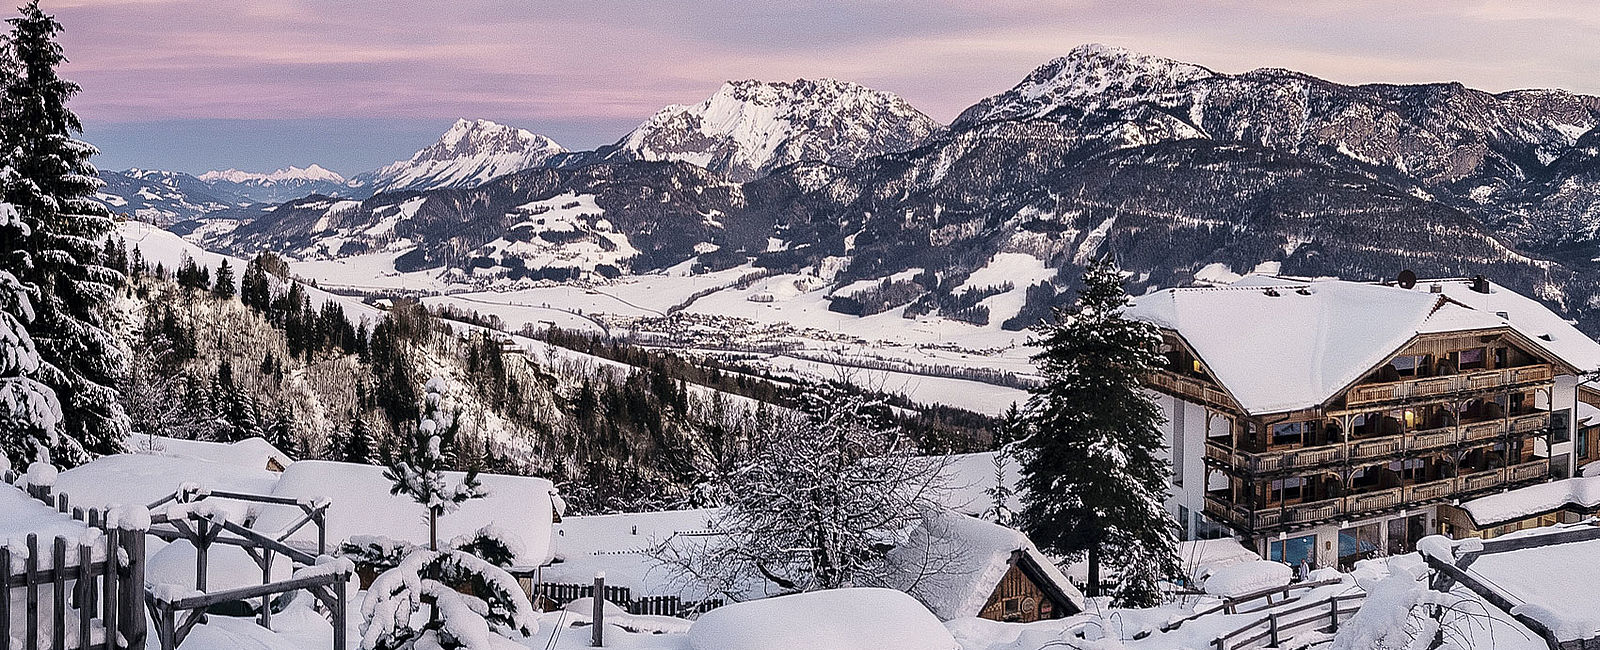 VERY SPECIAL HOTEL
 Natur - und Wellnesshotel Hoeflehner 4 Sterne Superior Steiermark 
 Das alpine Wellness Hotel 